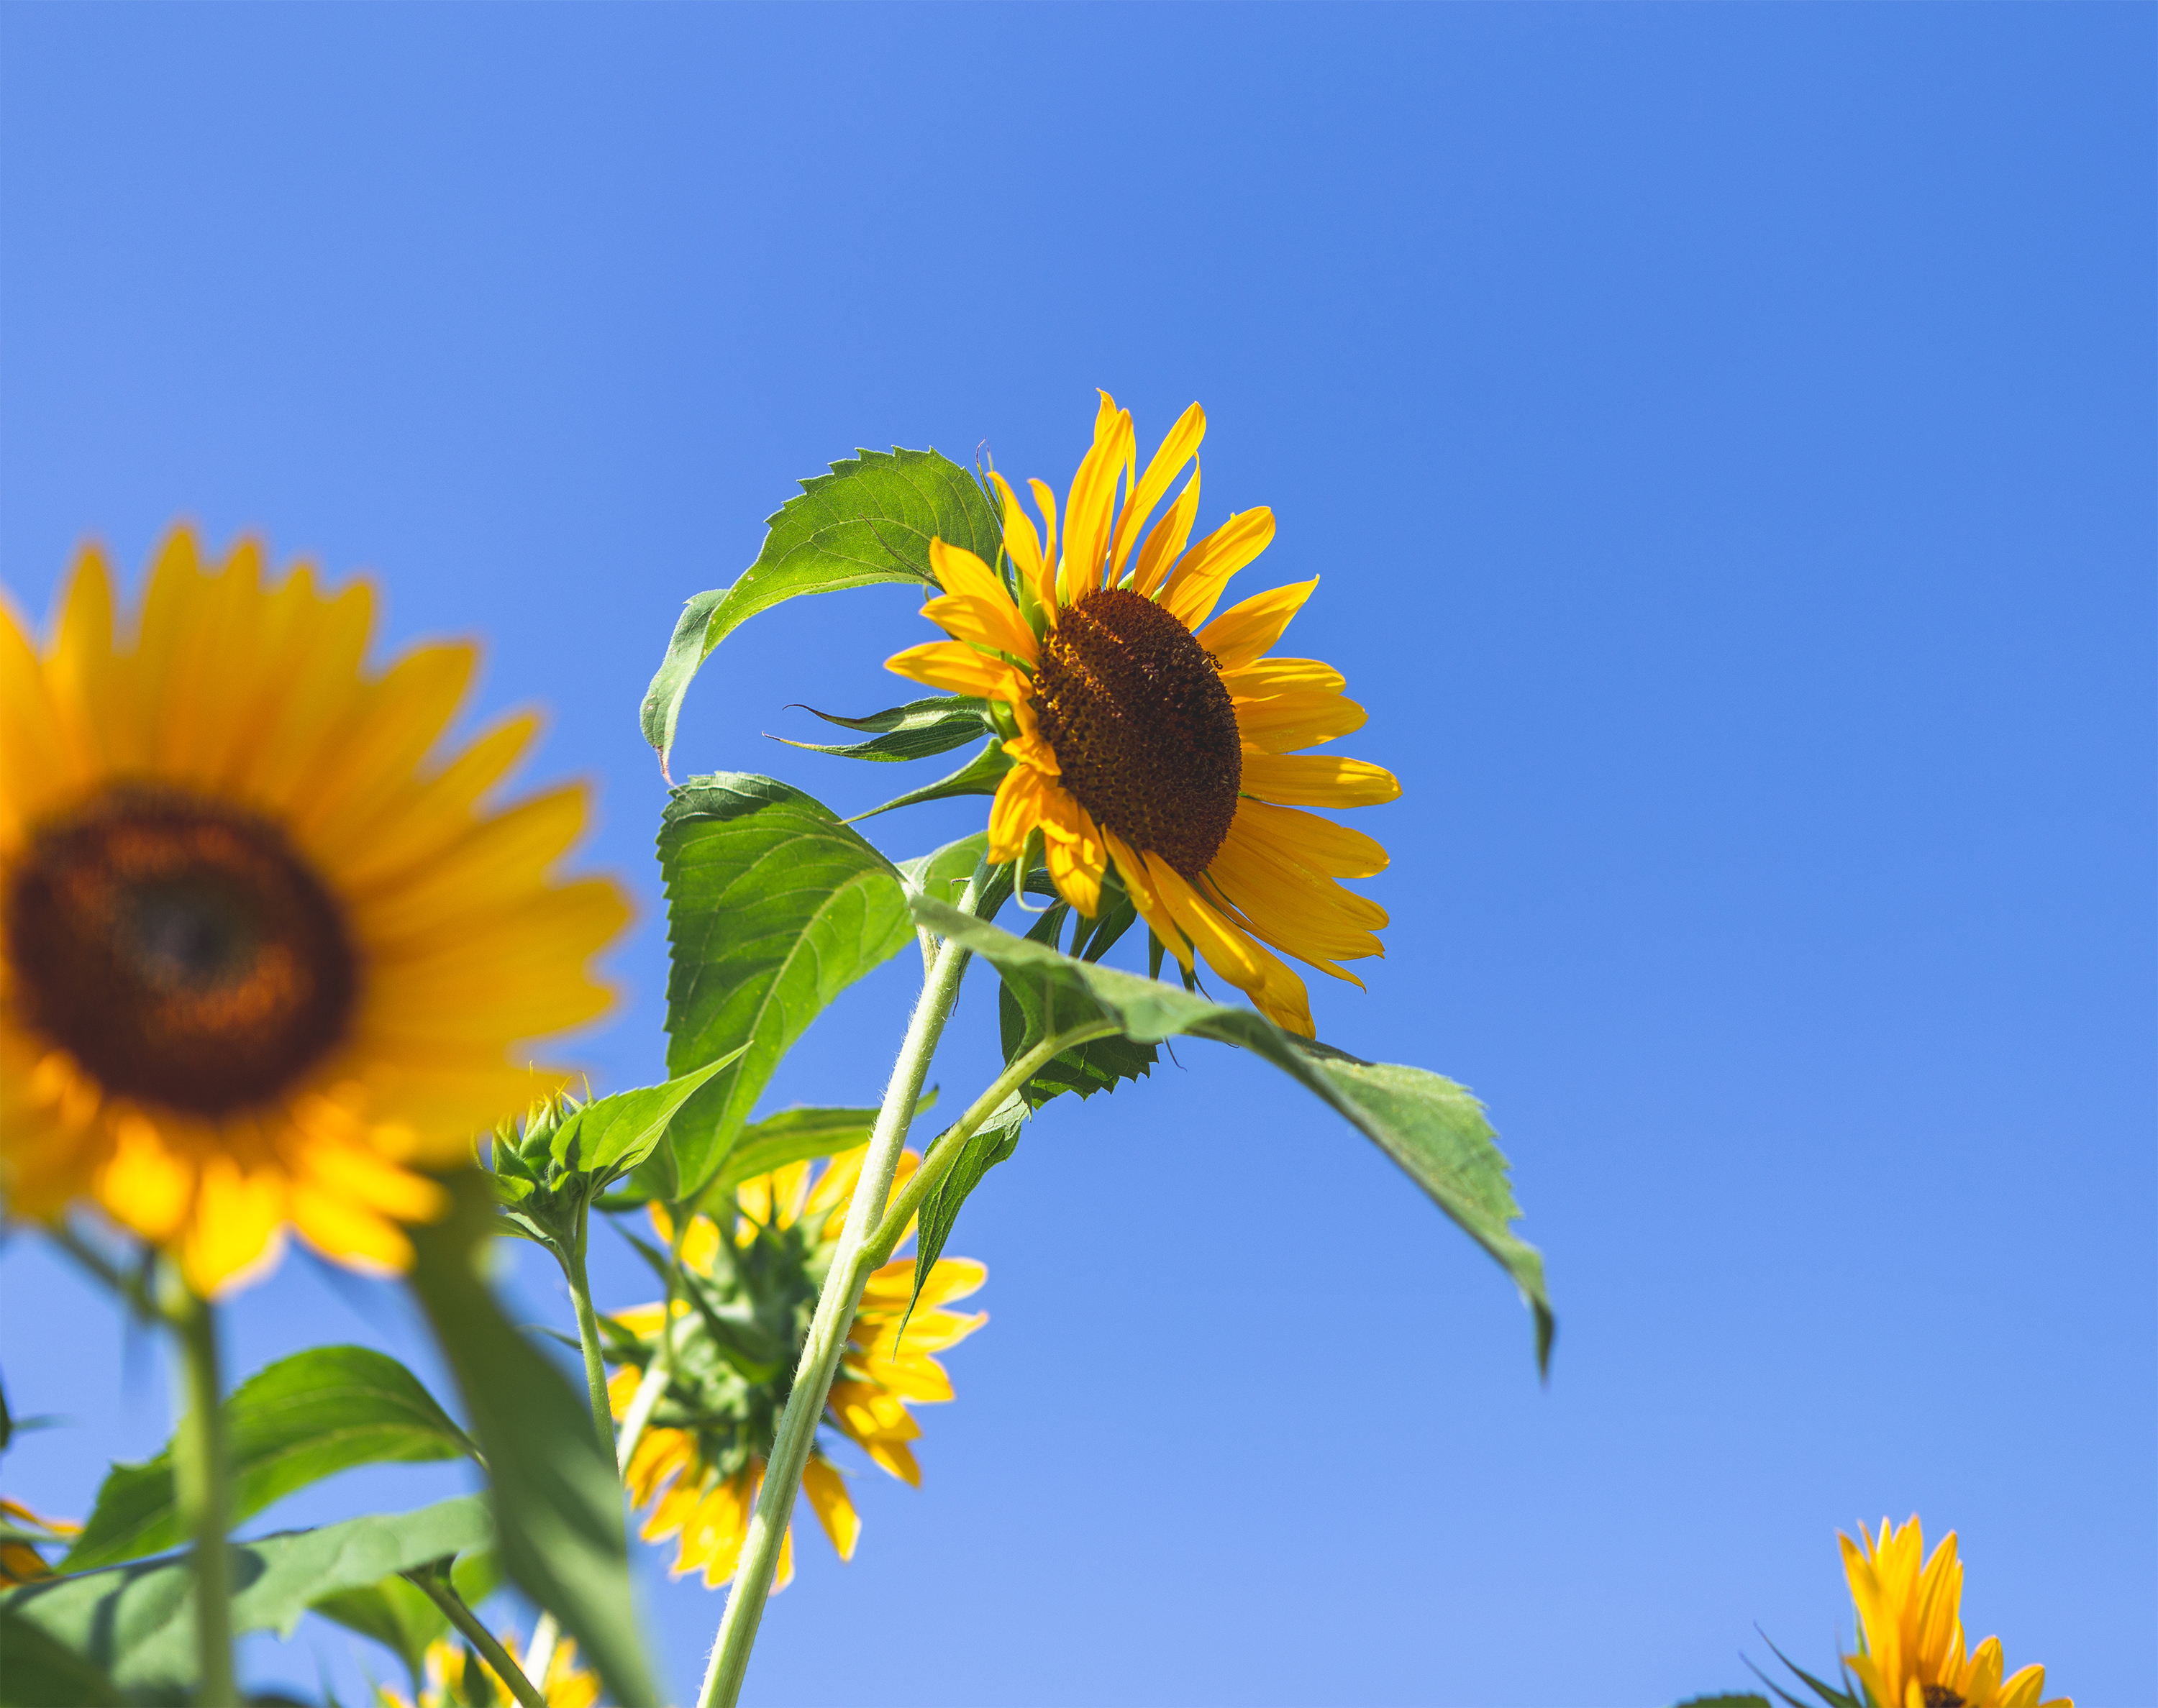 ひまわり 向日葵 と夏の空03 無料の高画質フリー写真素材 イメージズラボ